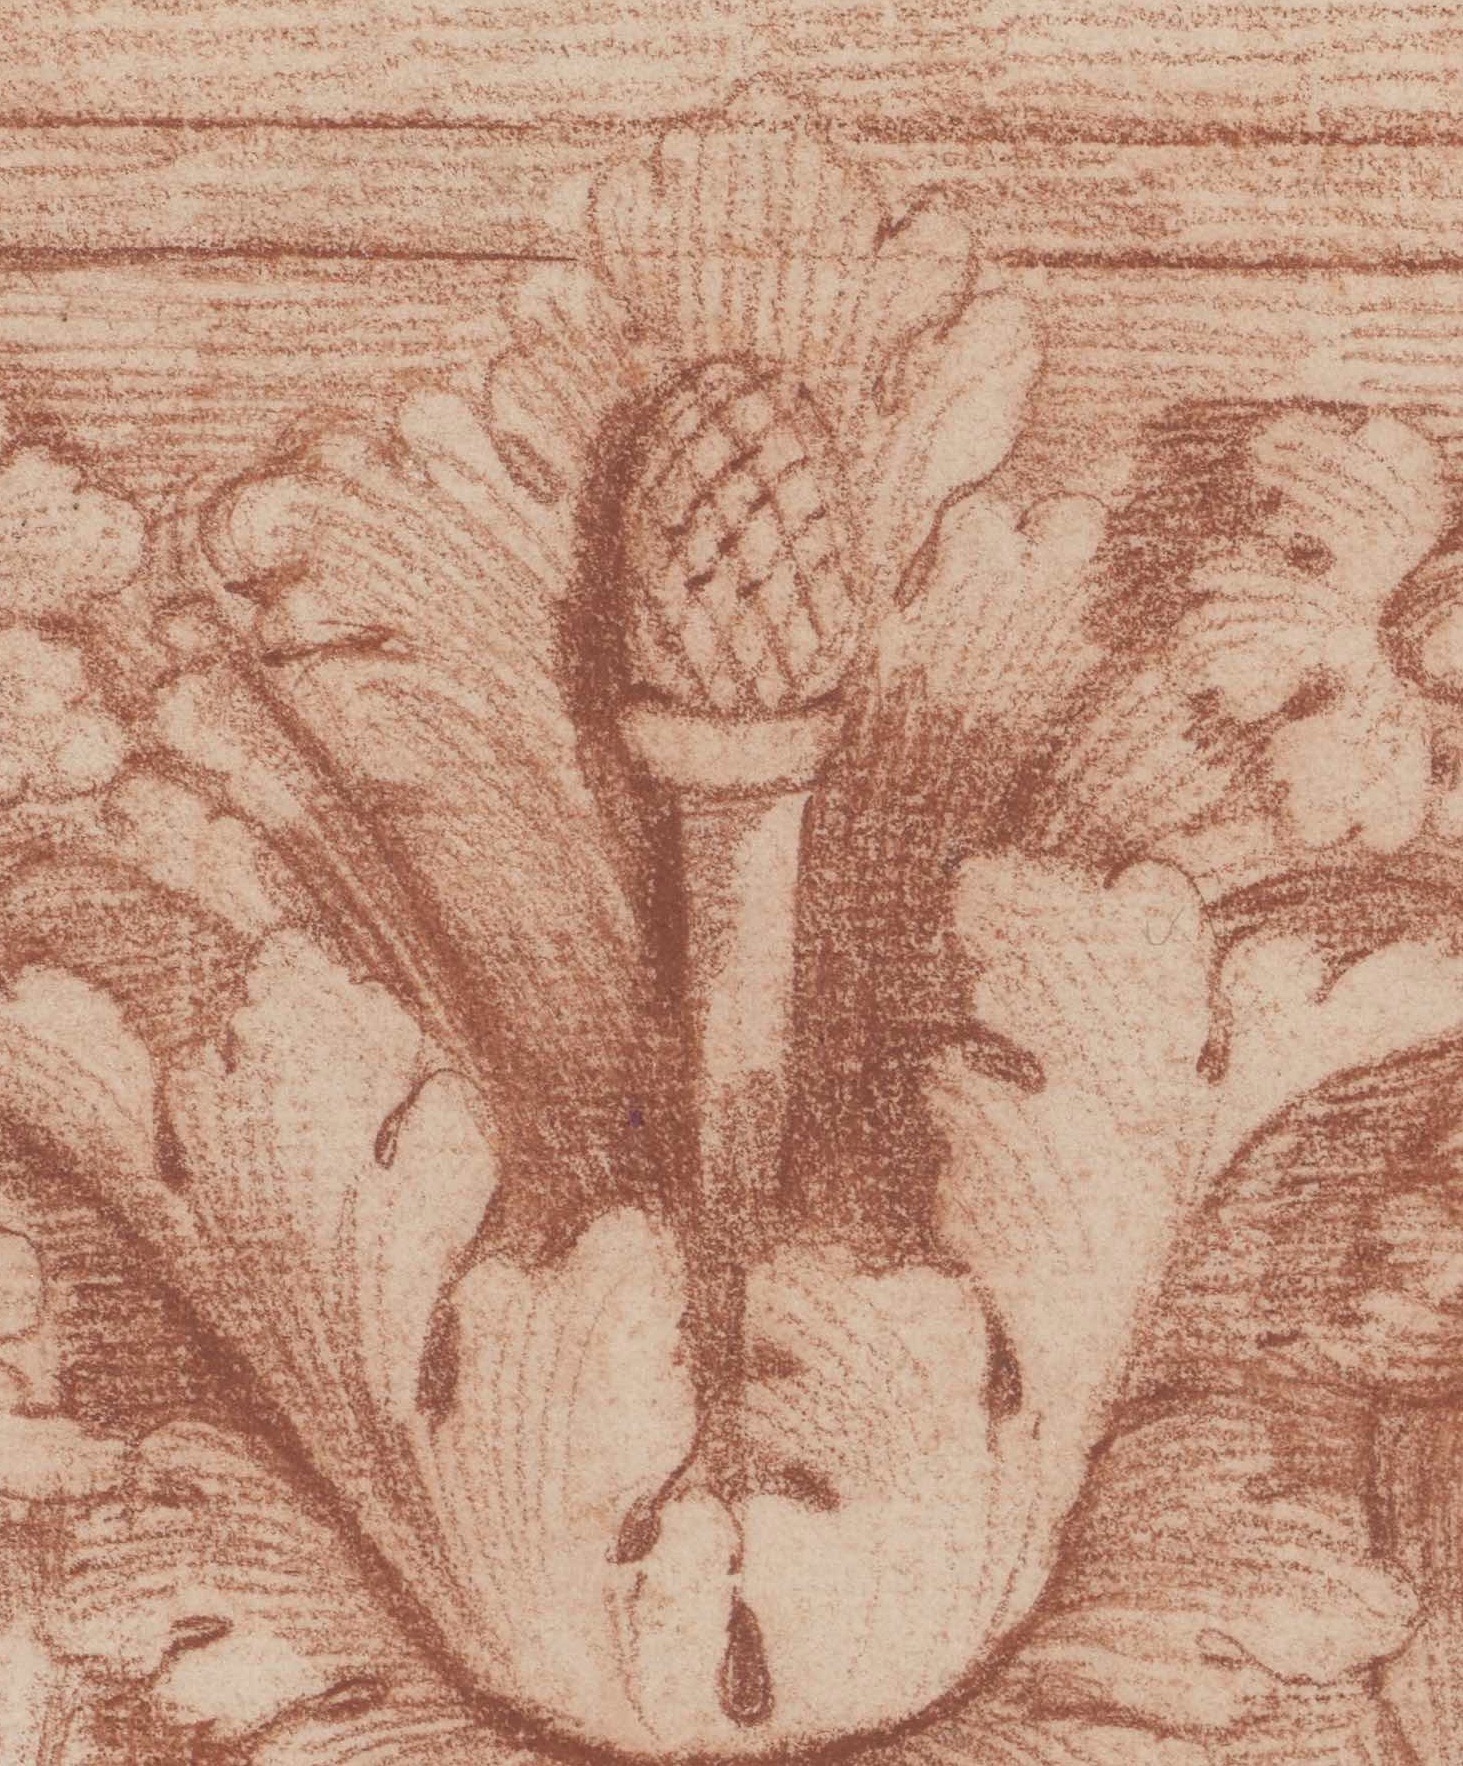 Detailausschnitt einer Rötelzeichnung Piranesis